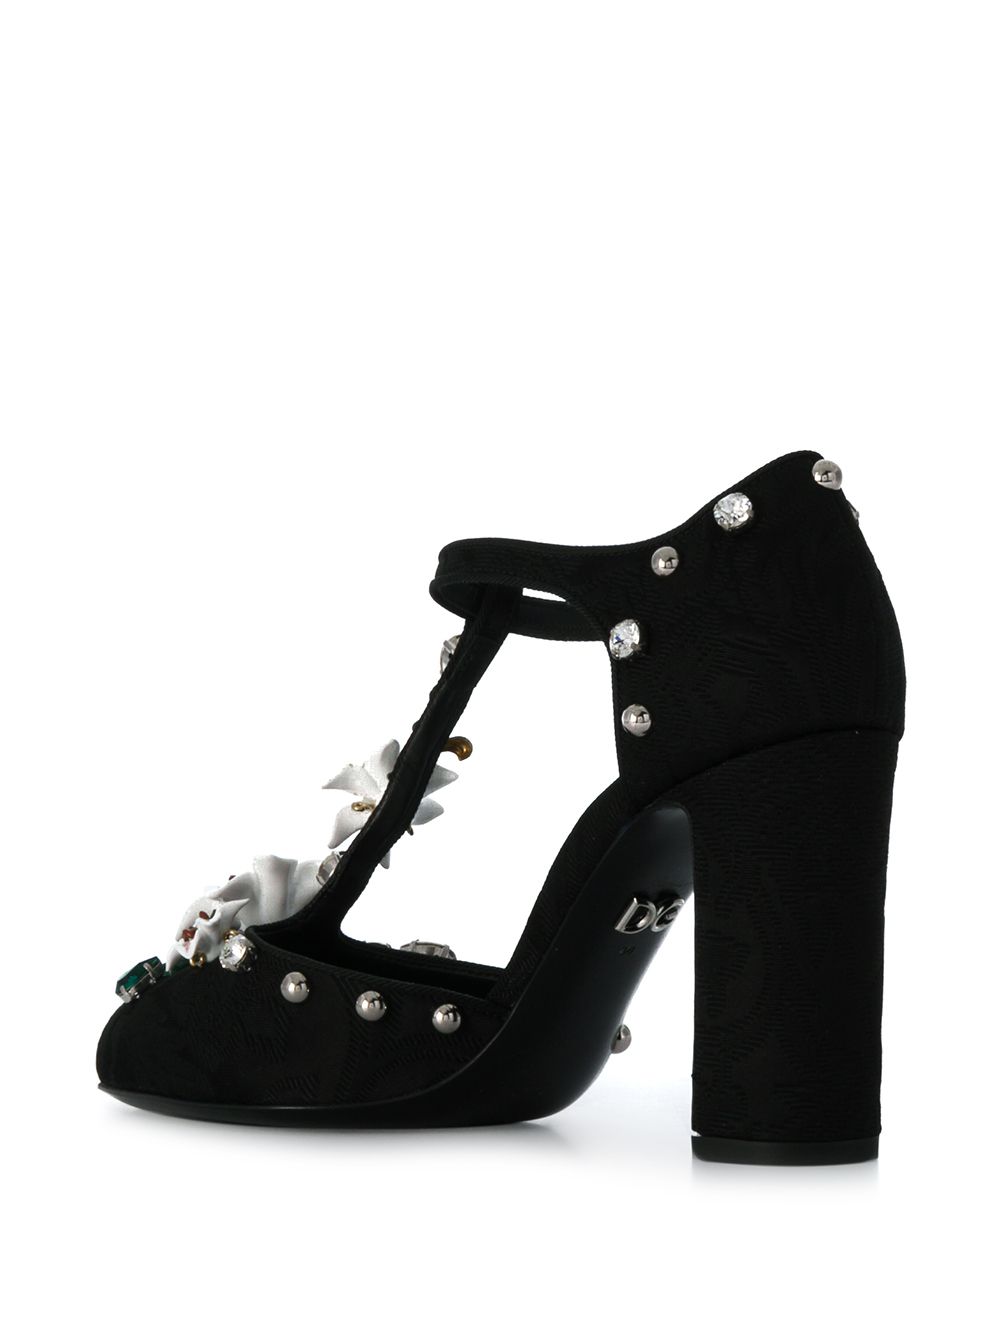 фото Dolce & Gabbana декорированные туфли